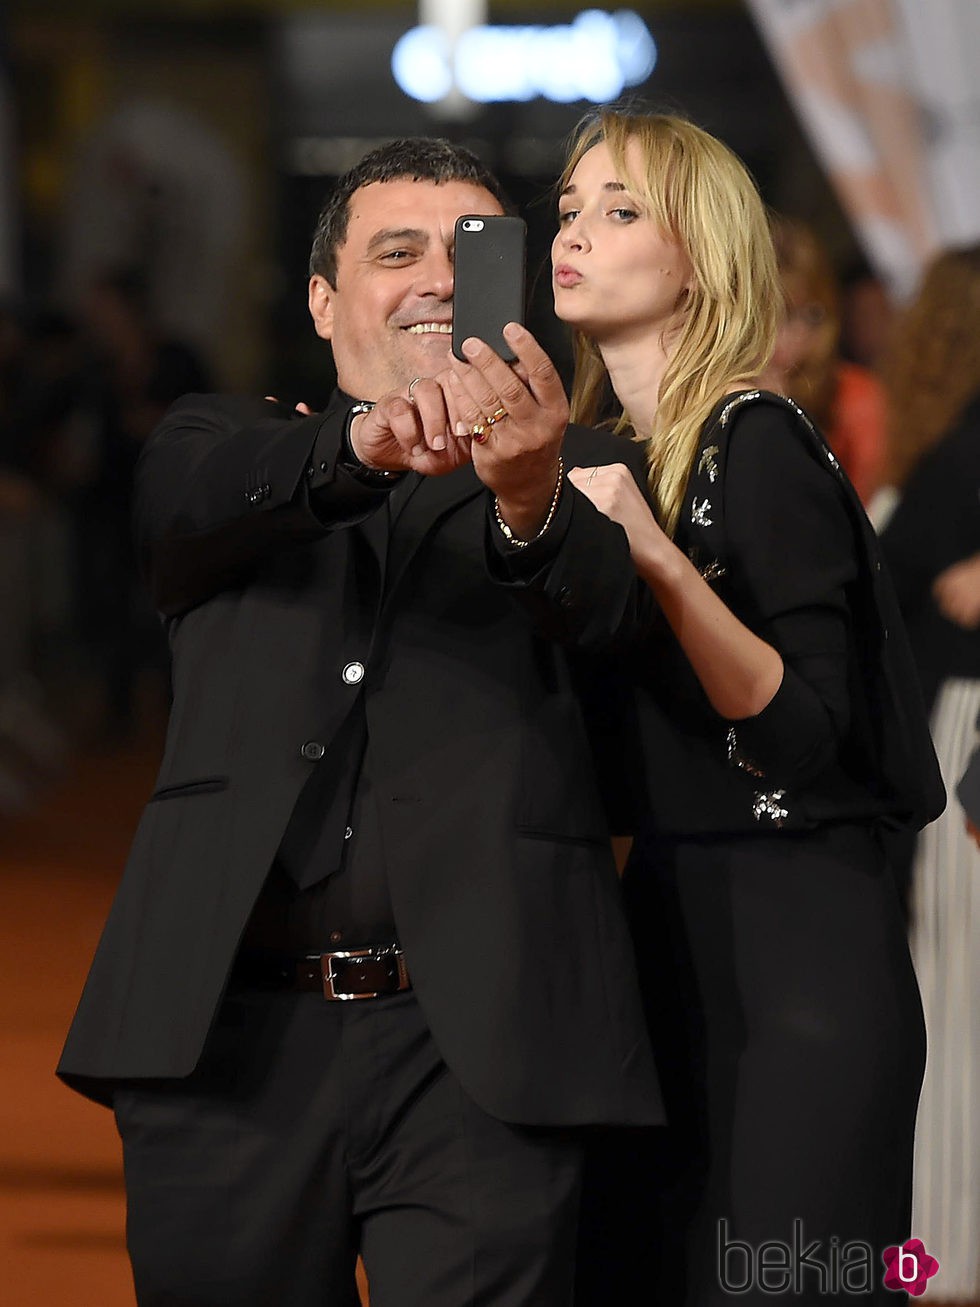 Ingrid García Jonsson y Paco Tous haciéndose un selfie en el estreno de 'Apaches' en el FesTVal de Vitoria 2015